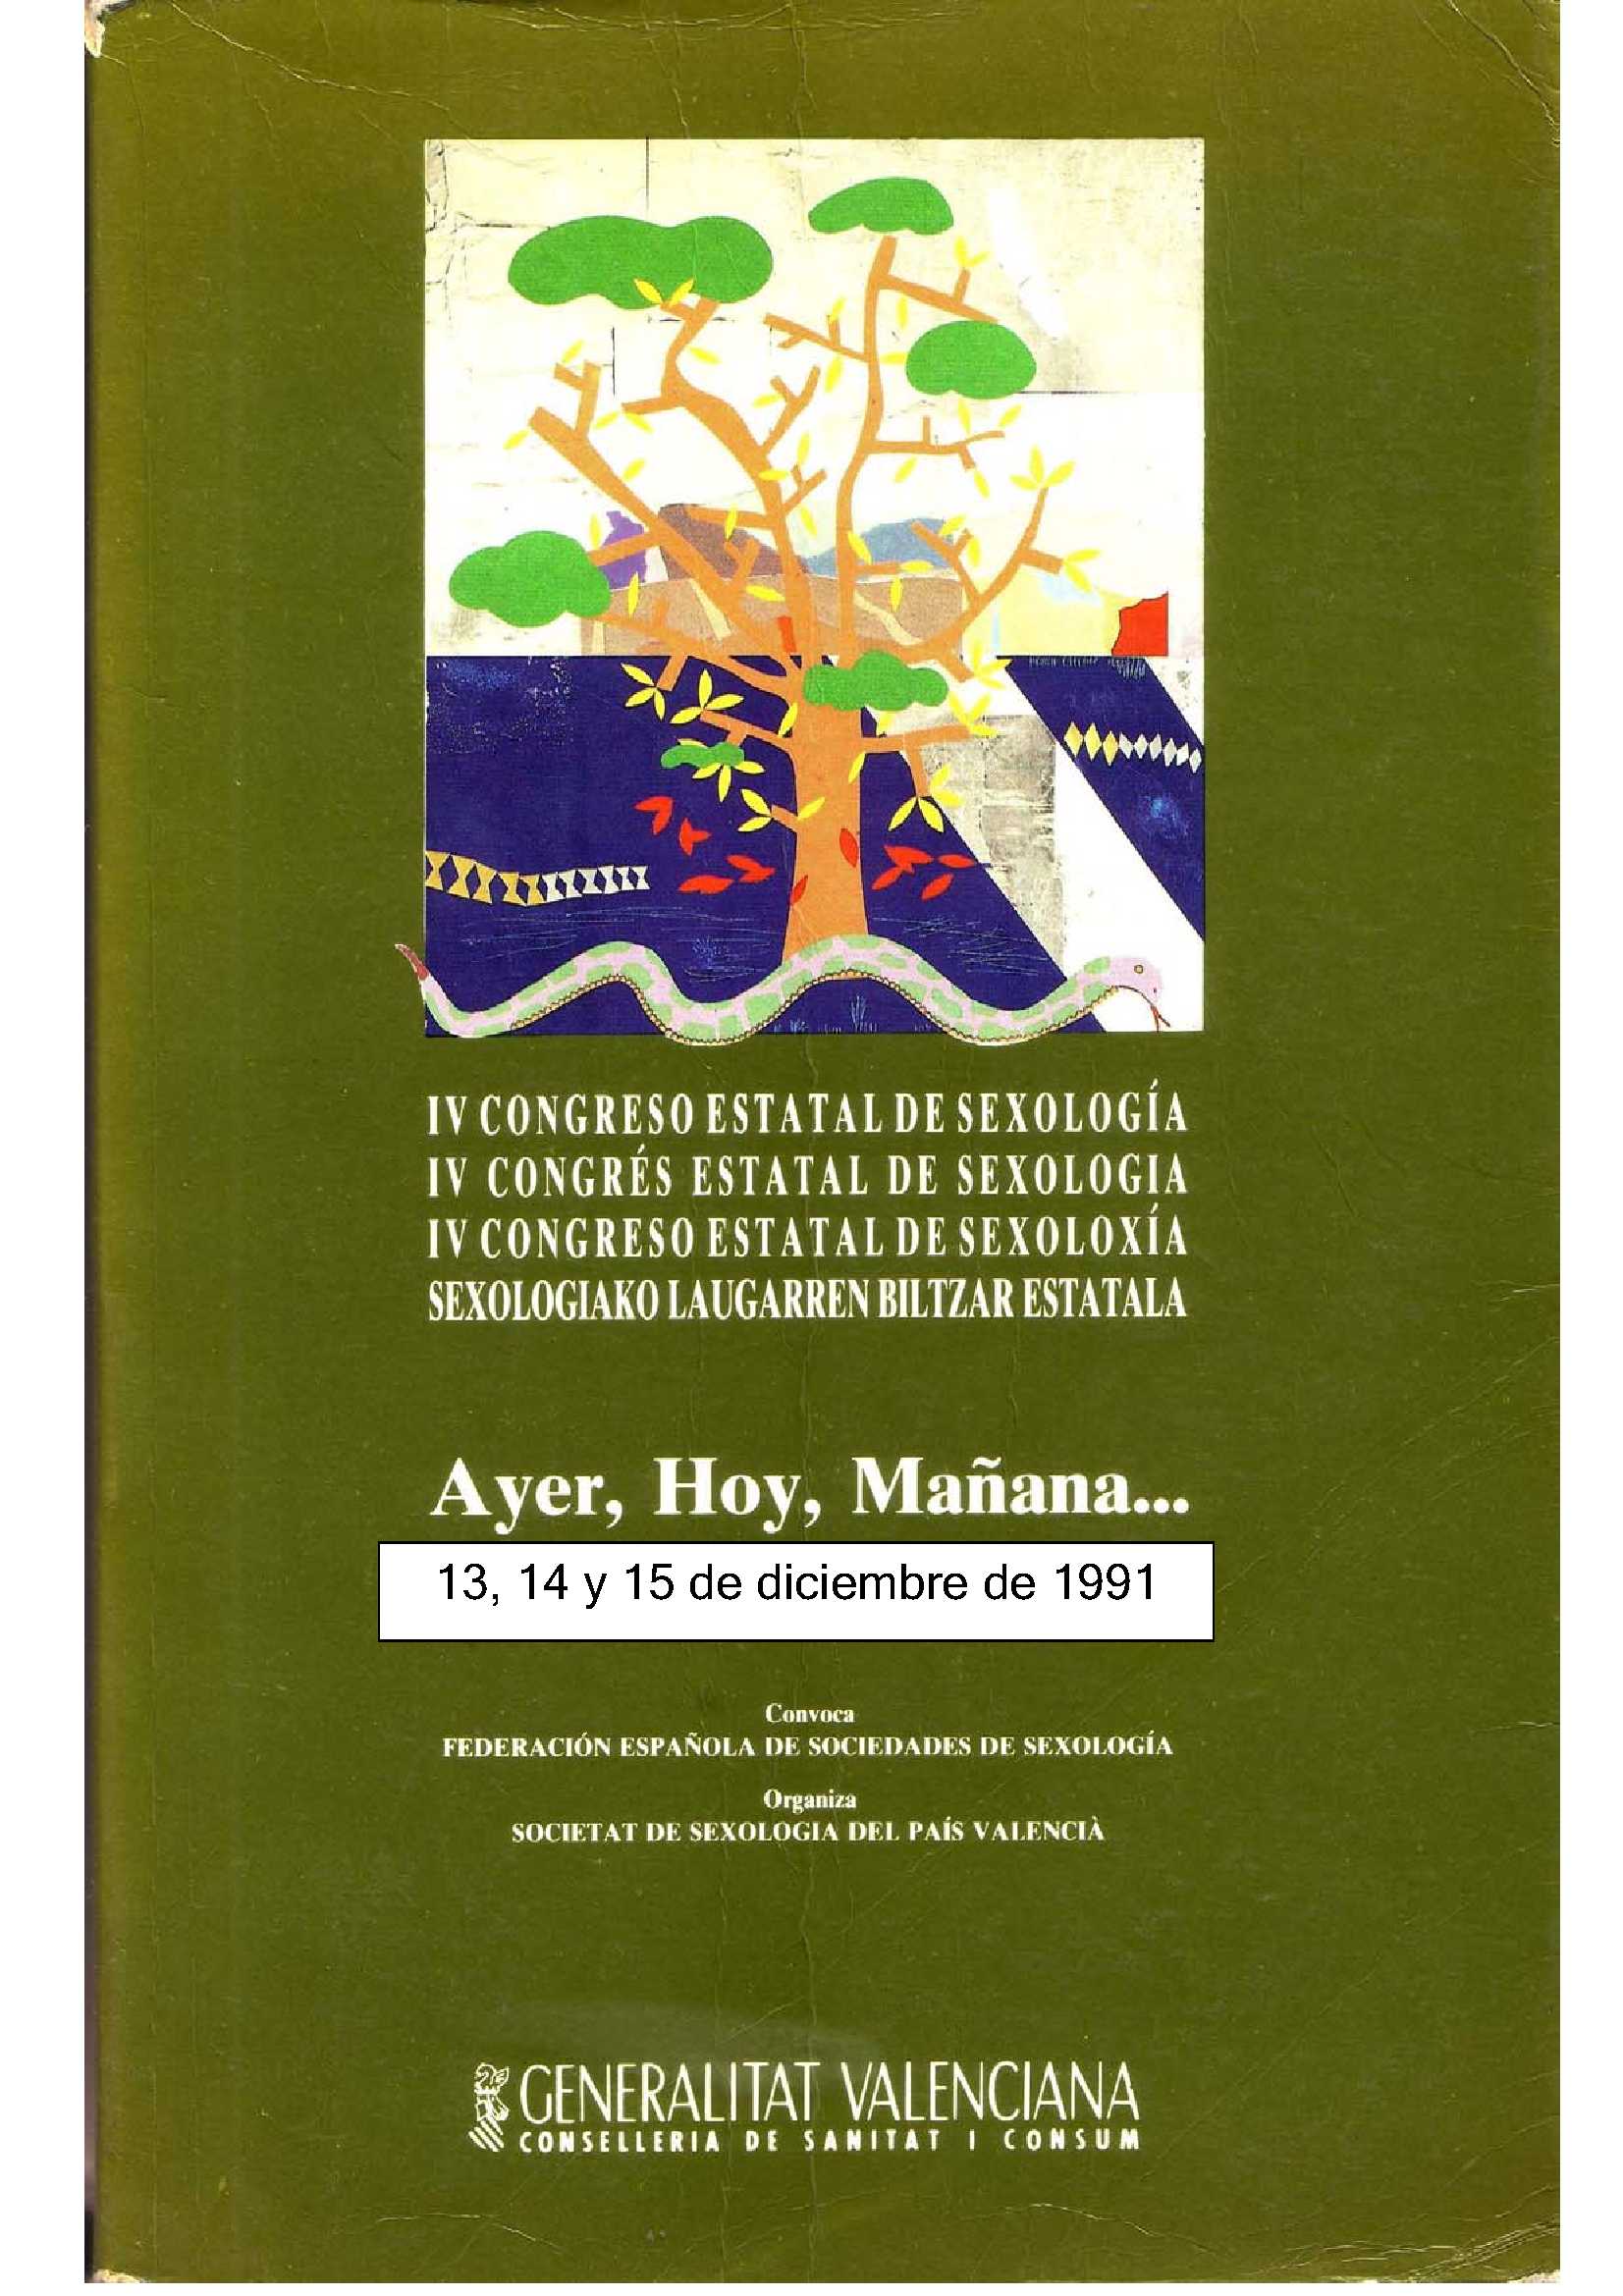 Cartel del IV Congreso Estatal de Sexología "Ayer, Hoy, Mañana,..."